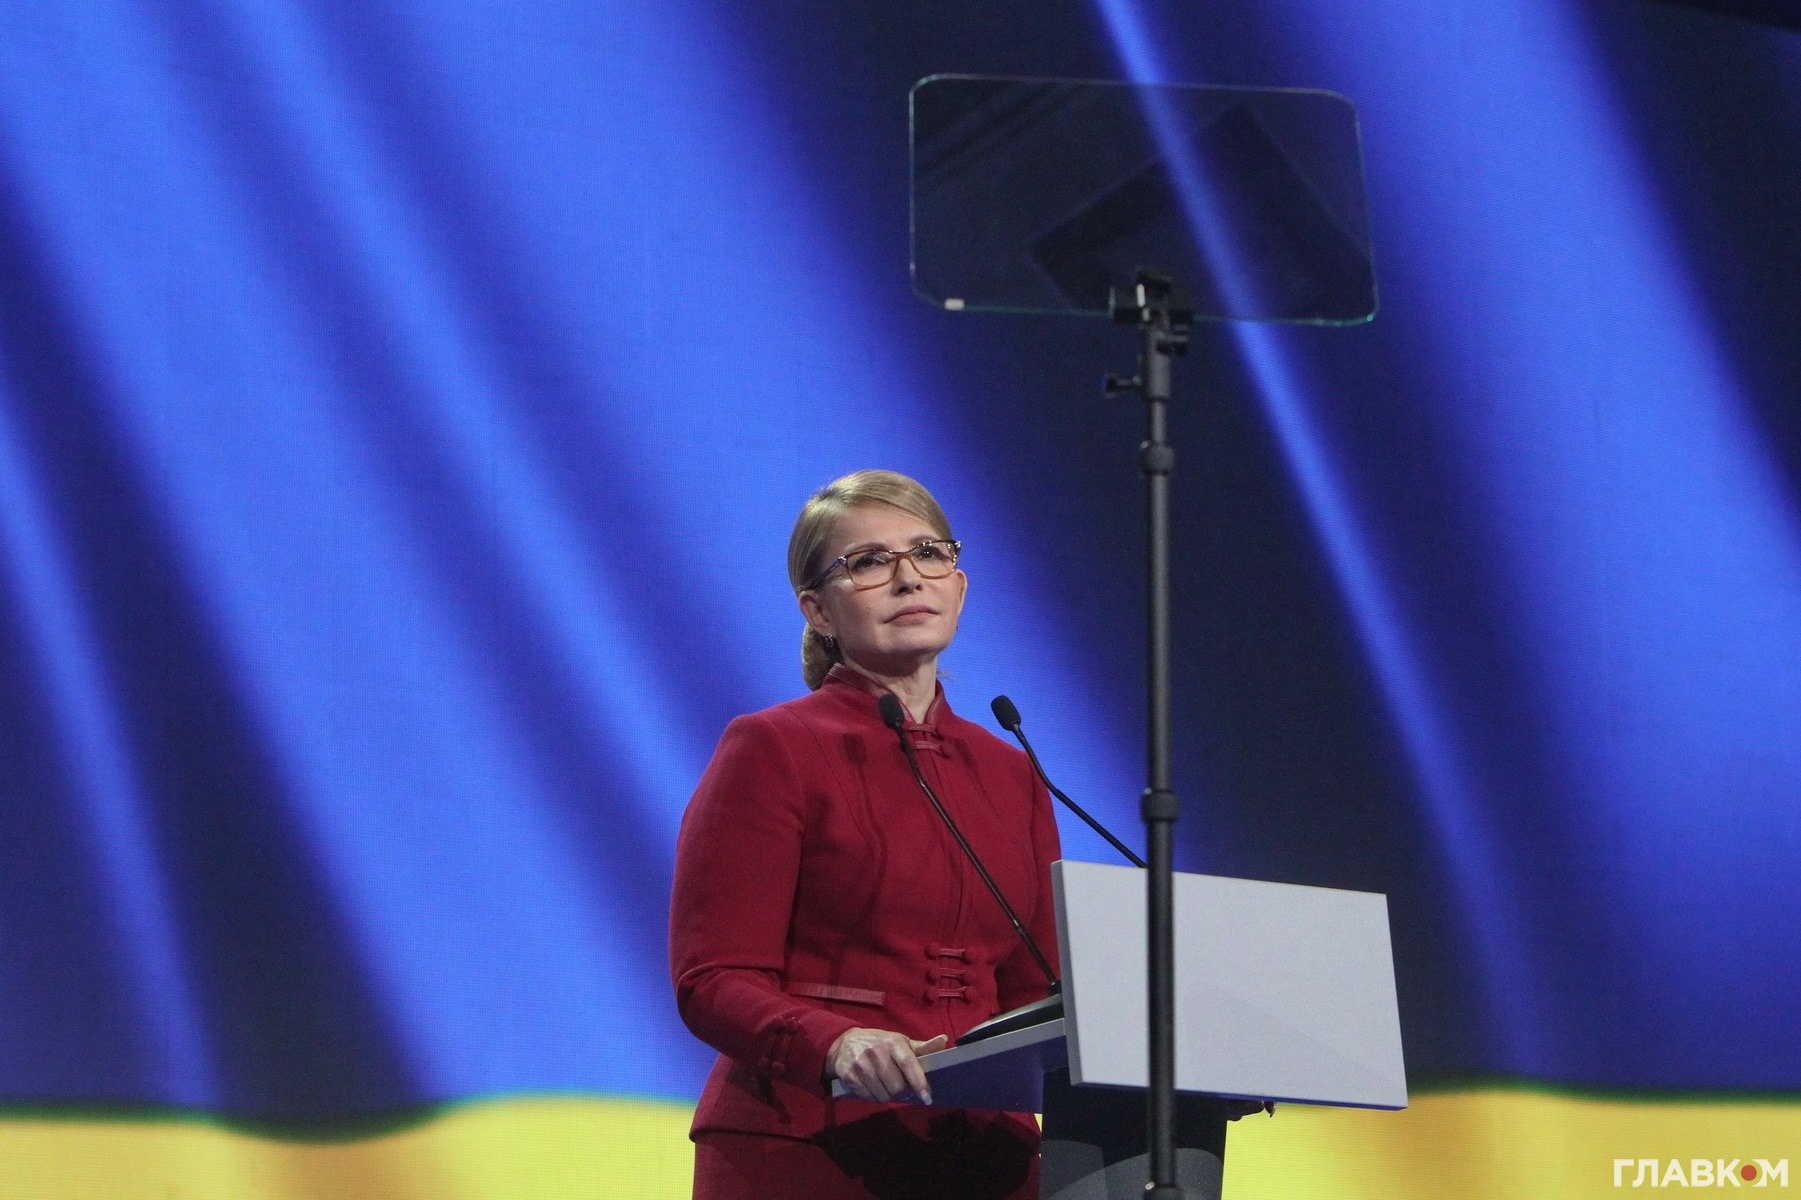 Юлія Тимошенко під час промови на з'їзді Батьківщини у Палаці спорту, 22 січня 2019 року